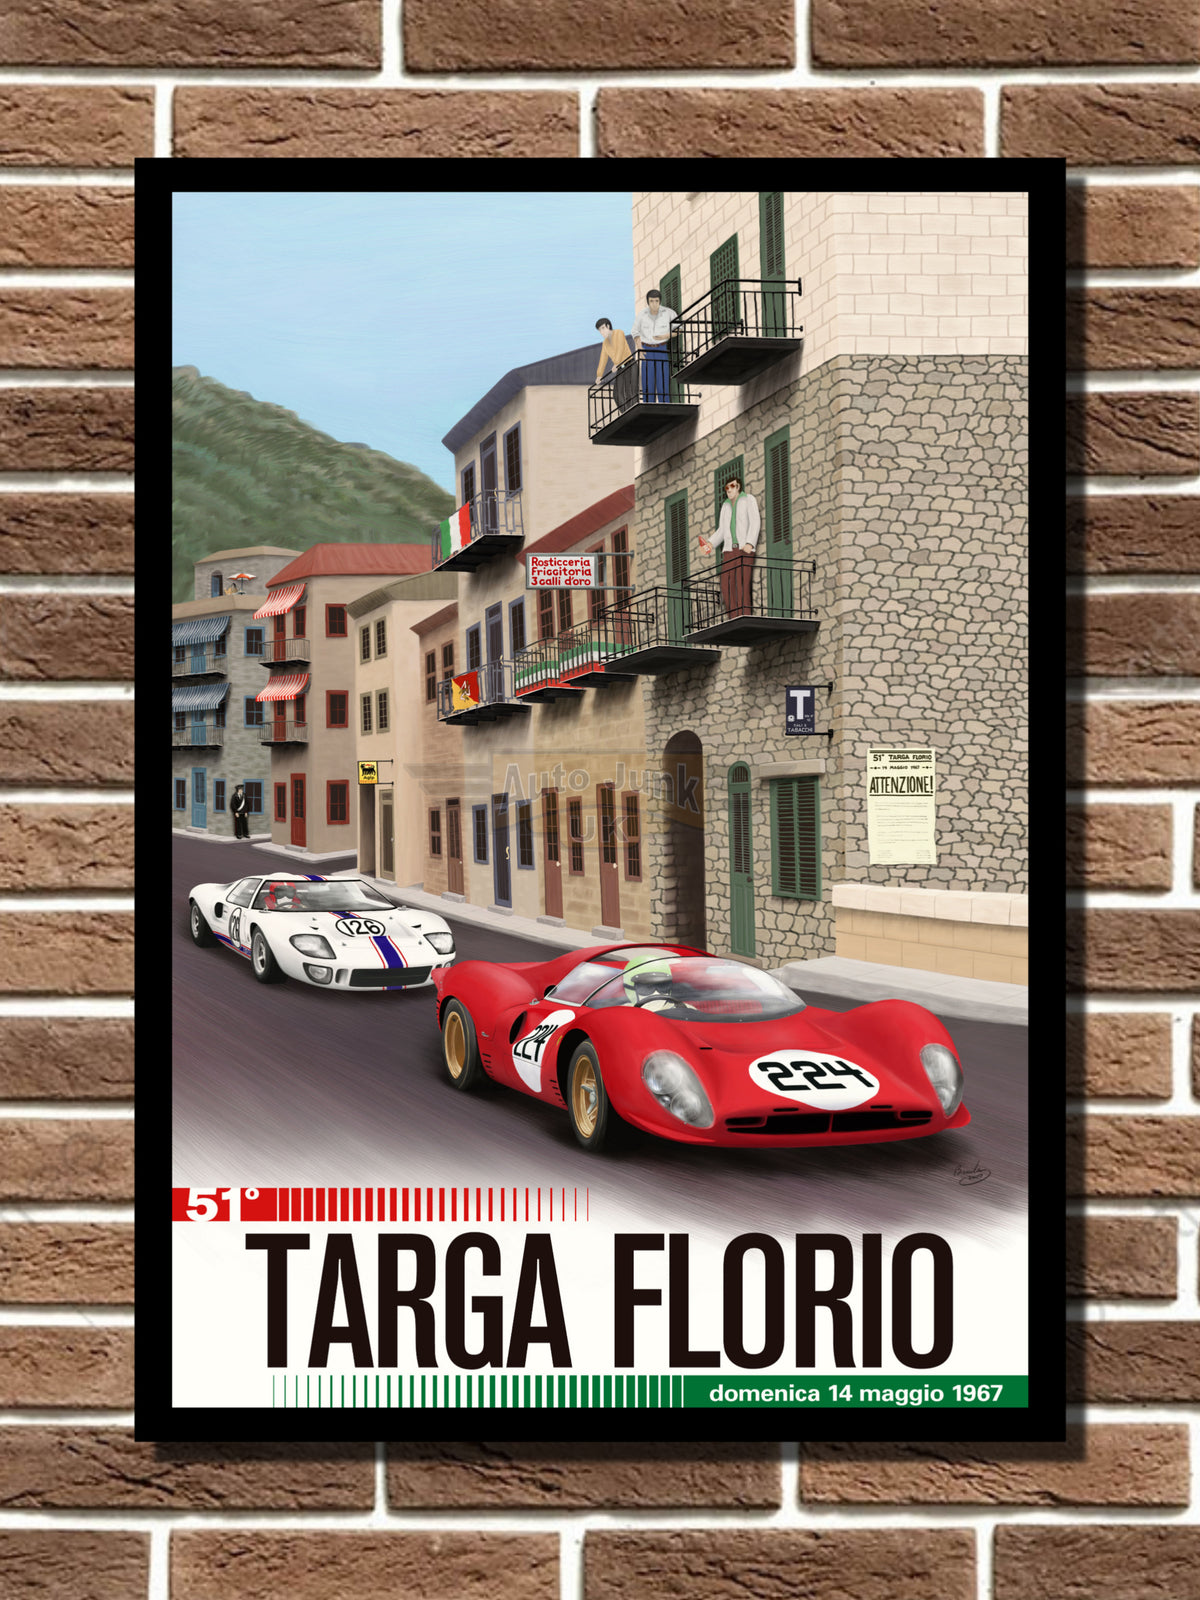 Targa Florio 1967 Metal Sign